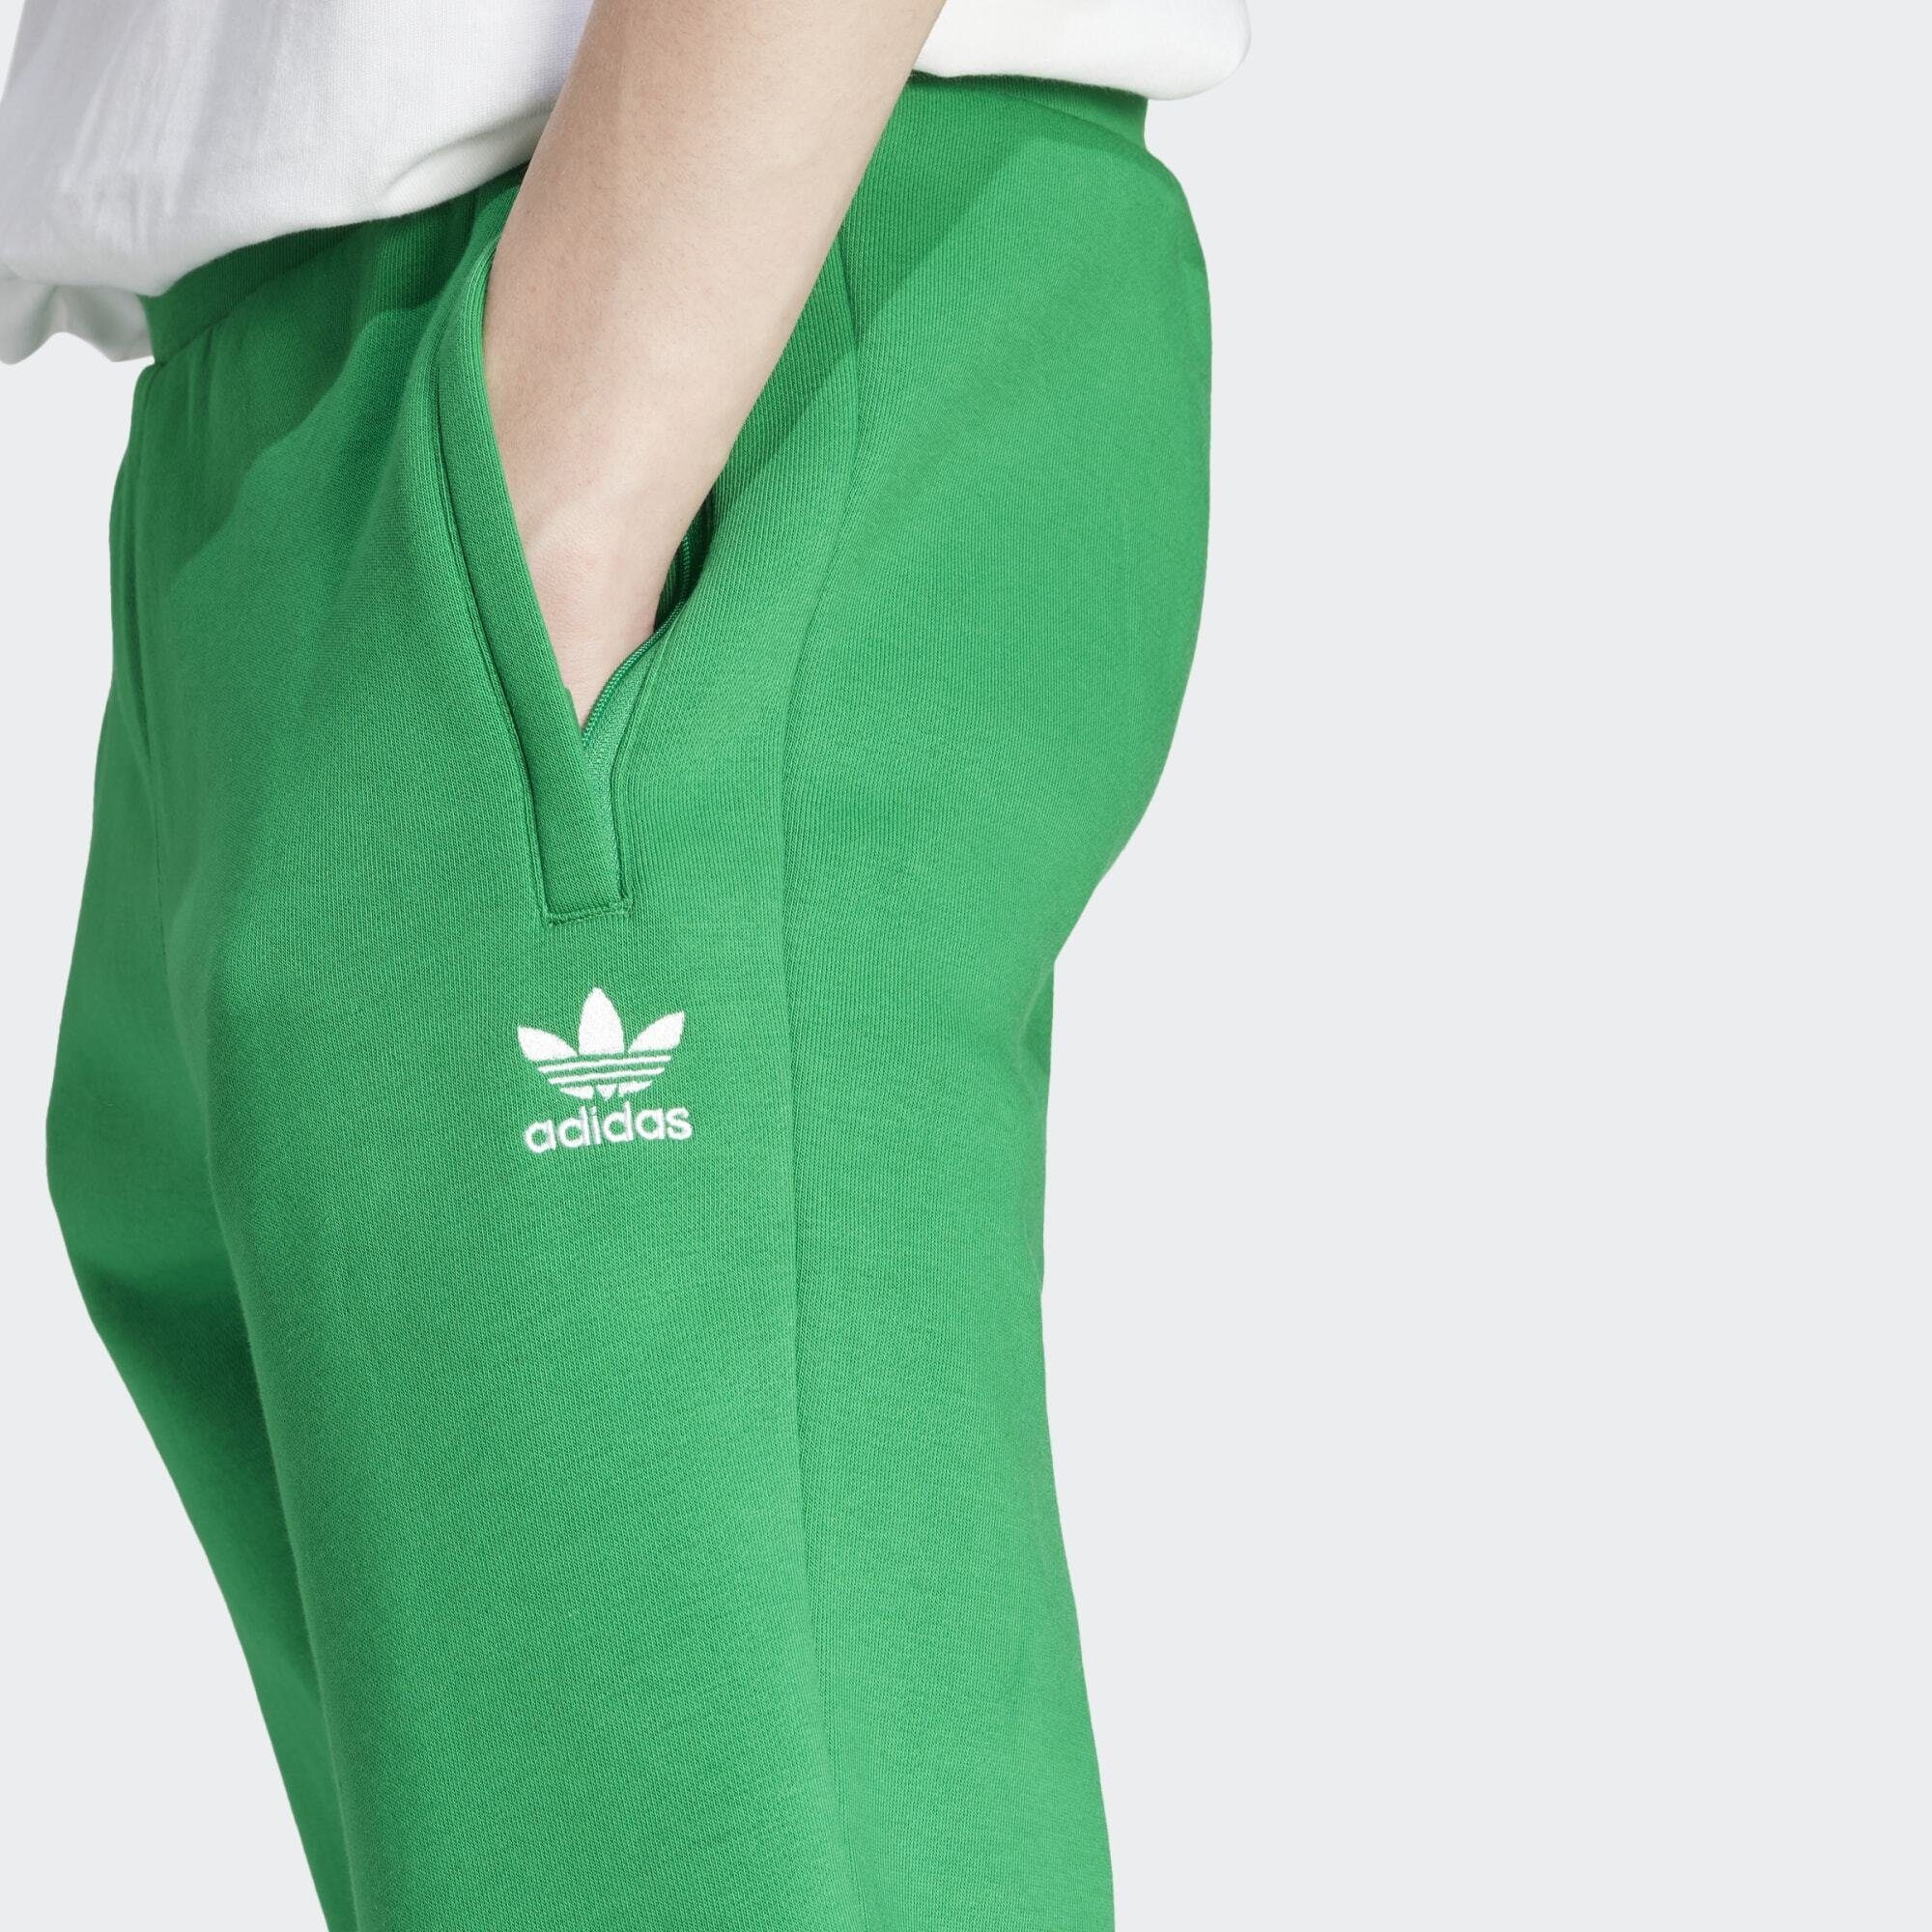 Green Originals HOSE TREFOIL adidas ESSENTIALS Jogginghose